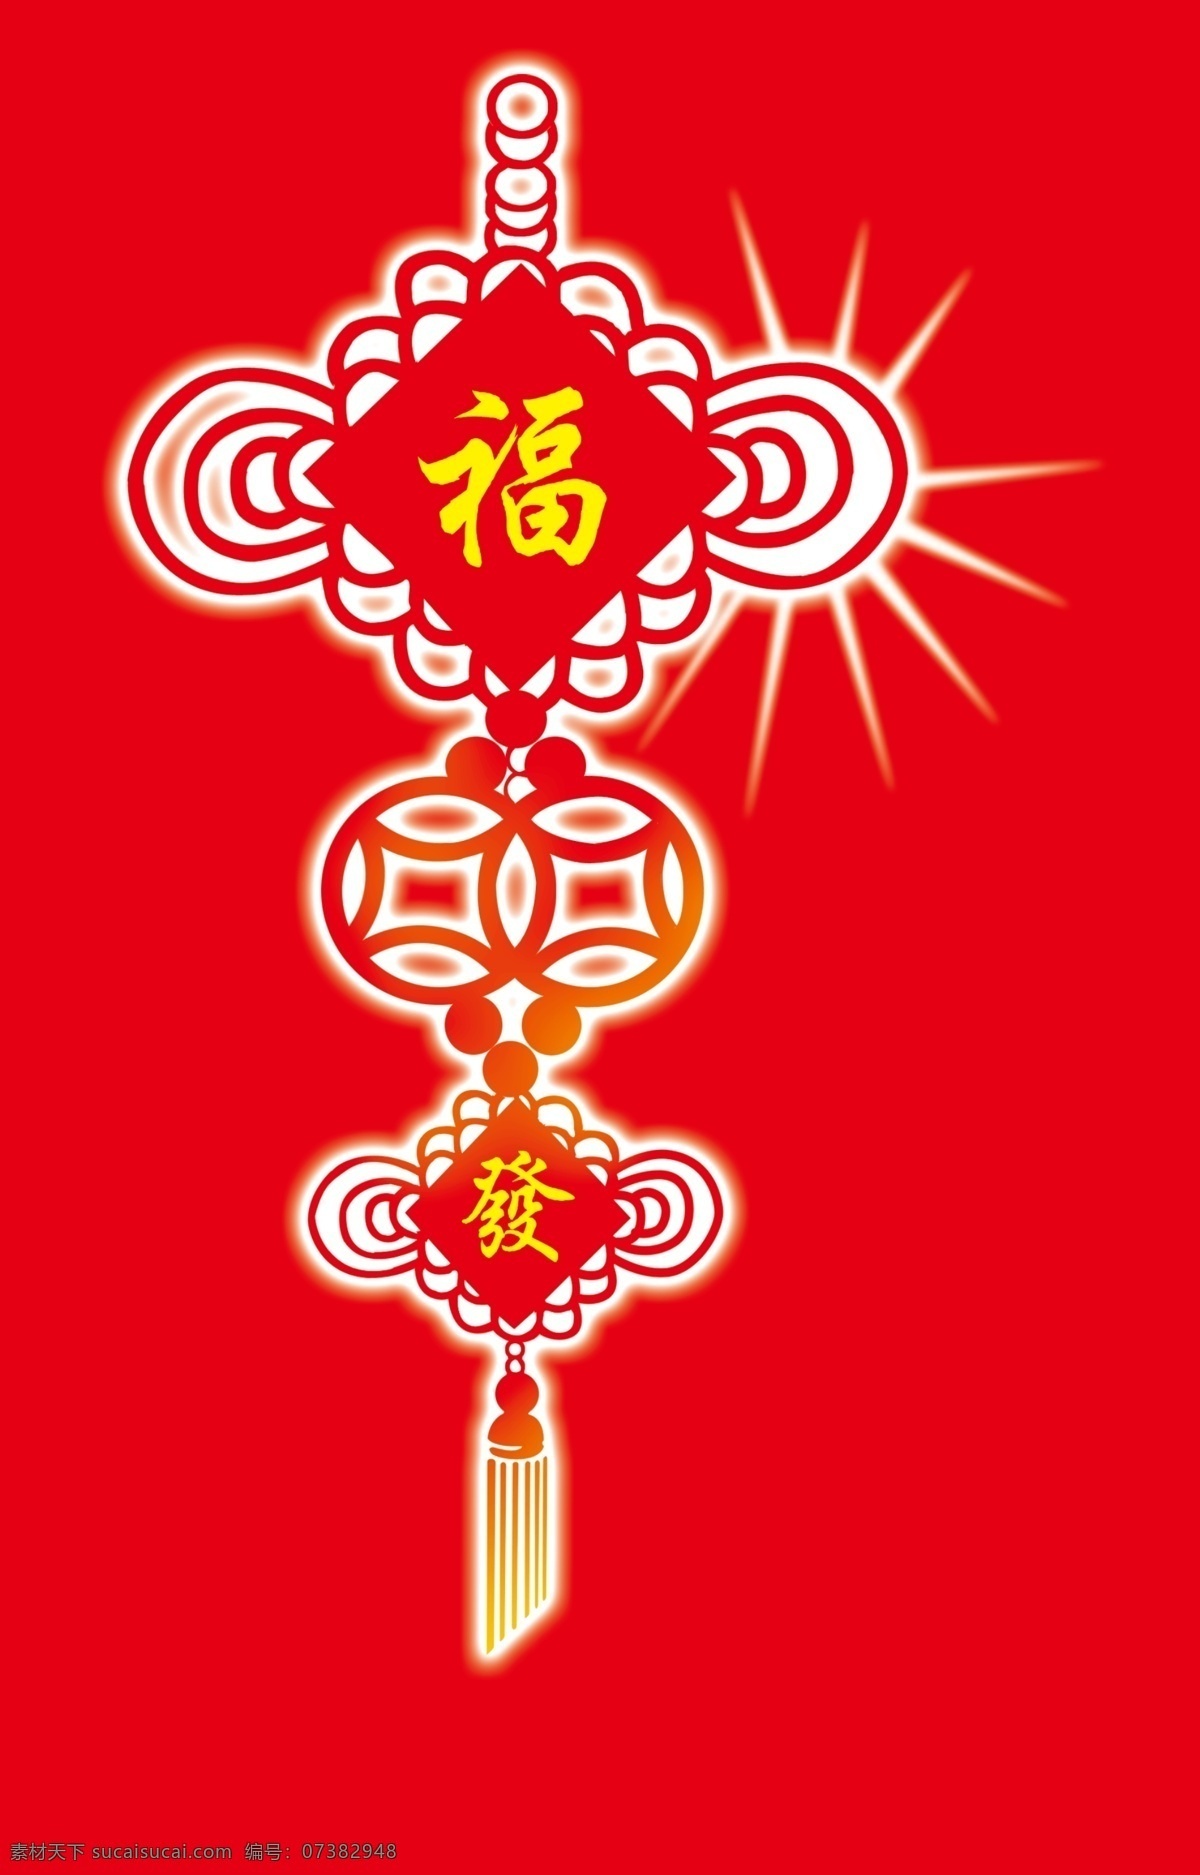 福运 喜庆中国结 矢量图 挂饰中国结 风景类 文化艺术 传统文化